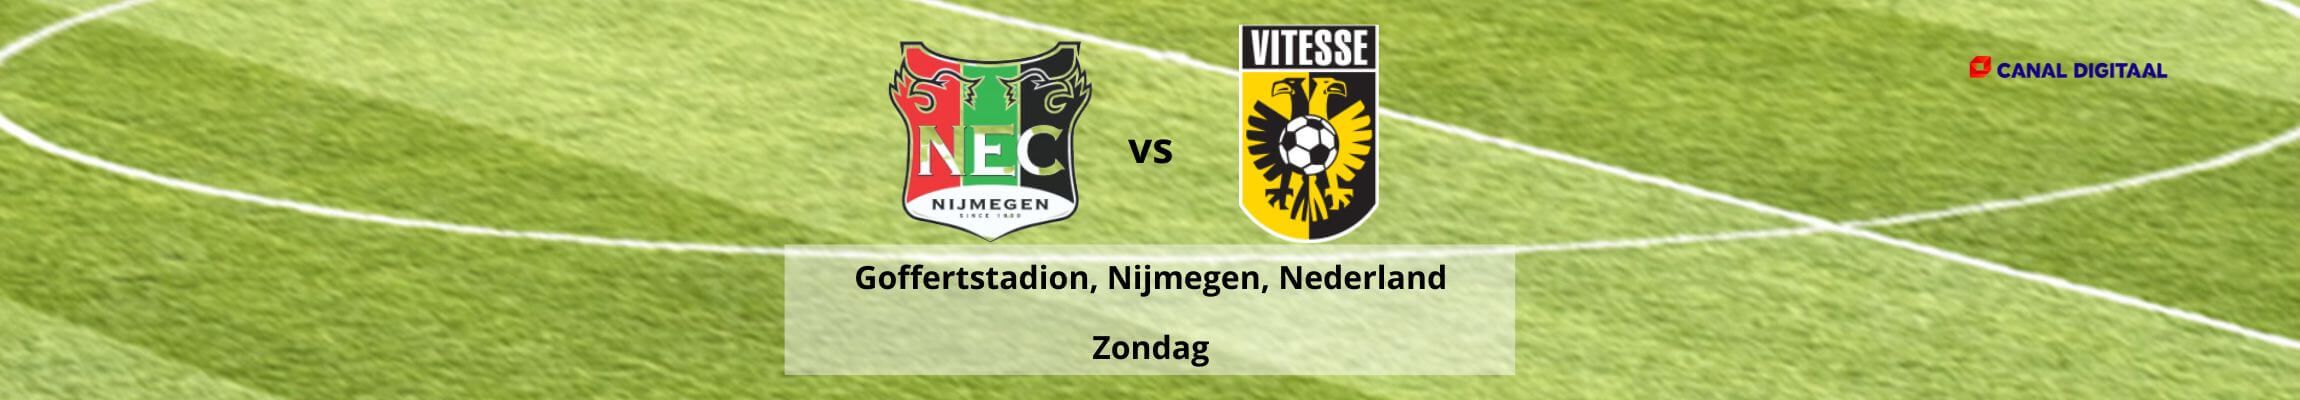 NEC-Vitesse